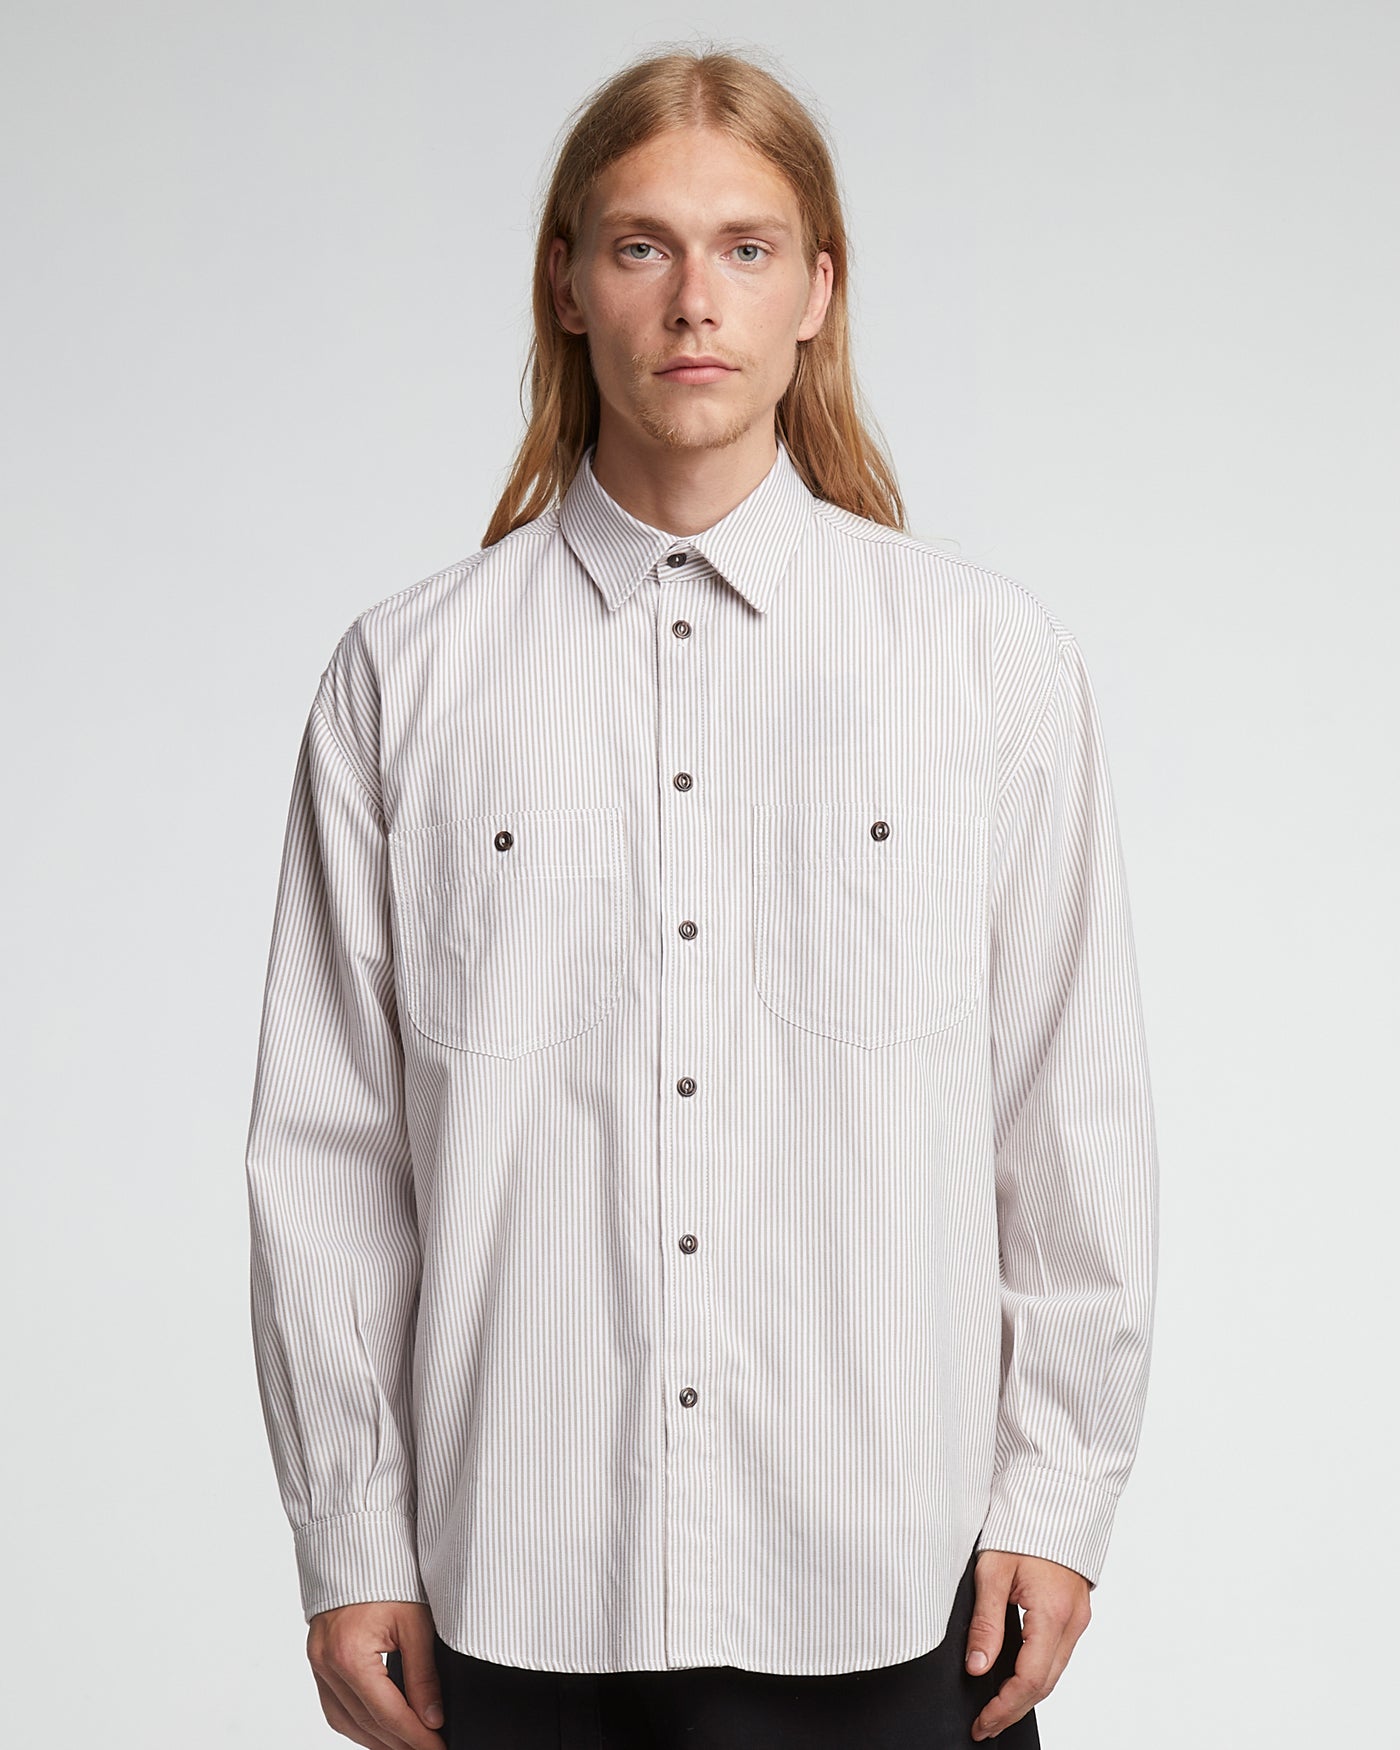 Mechanic Shirt Oxford Stripe Brown/White